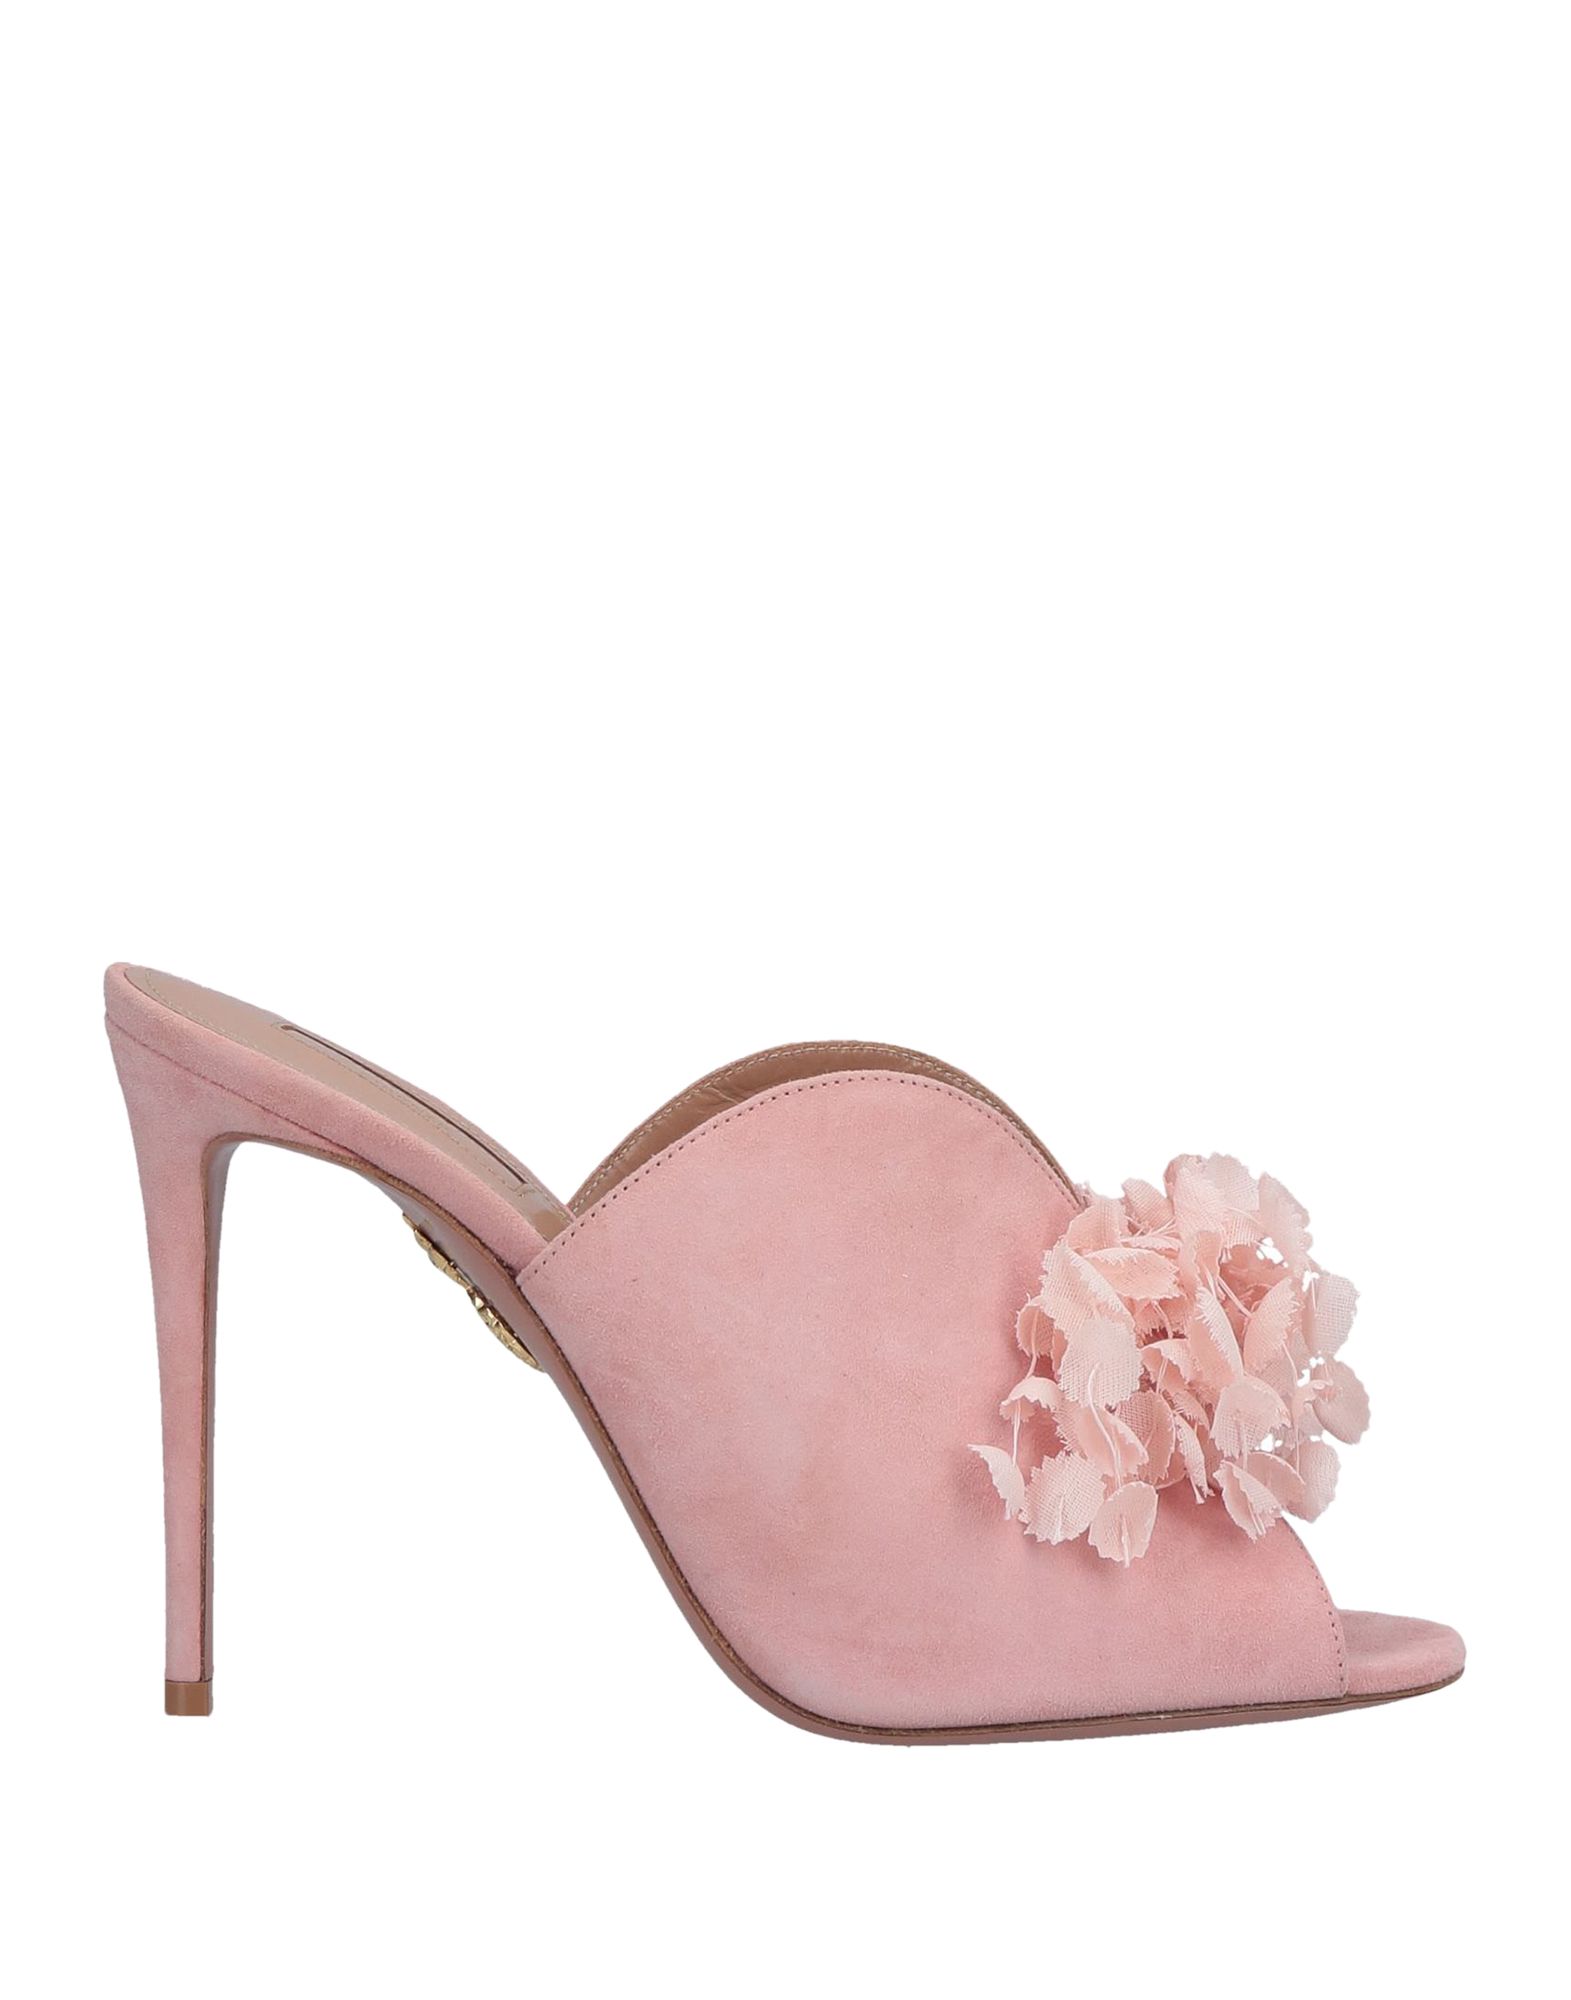 Shop Aquazzura Woman Sandals Light Pink Size 6.5 Soft Leather